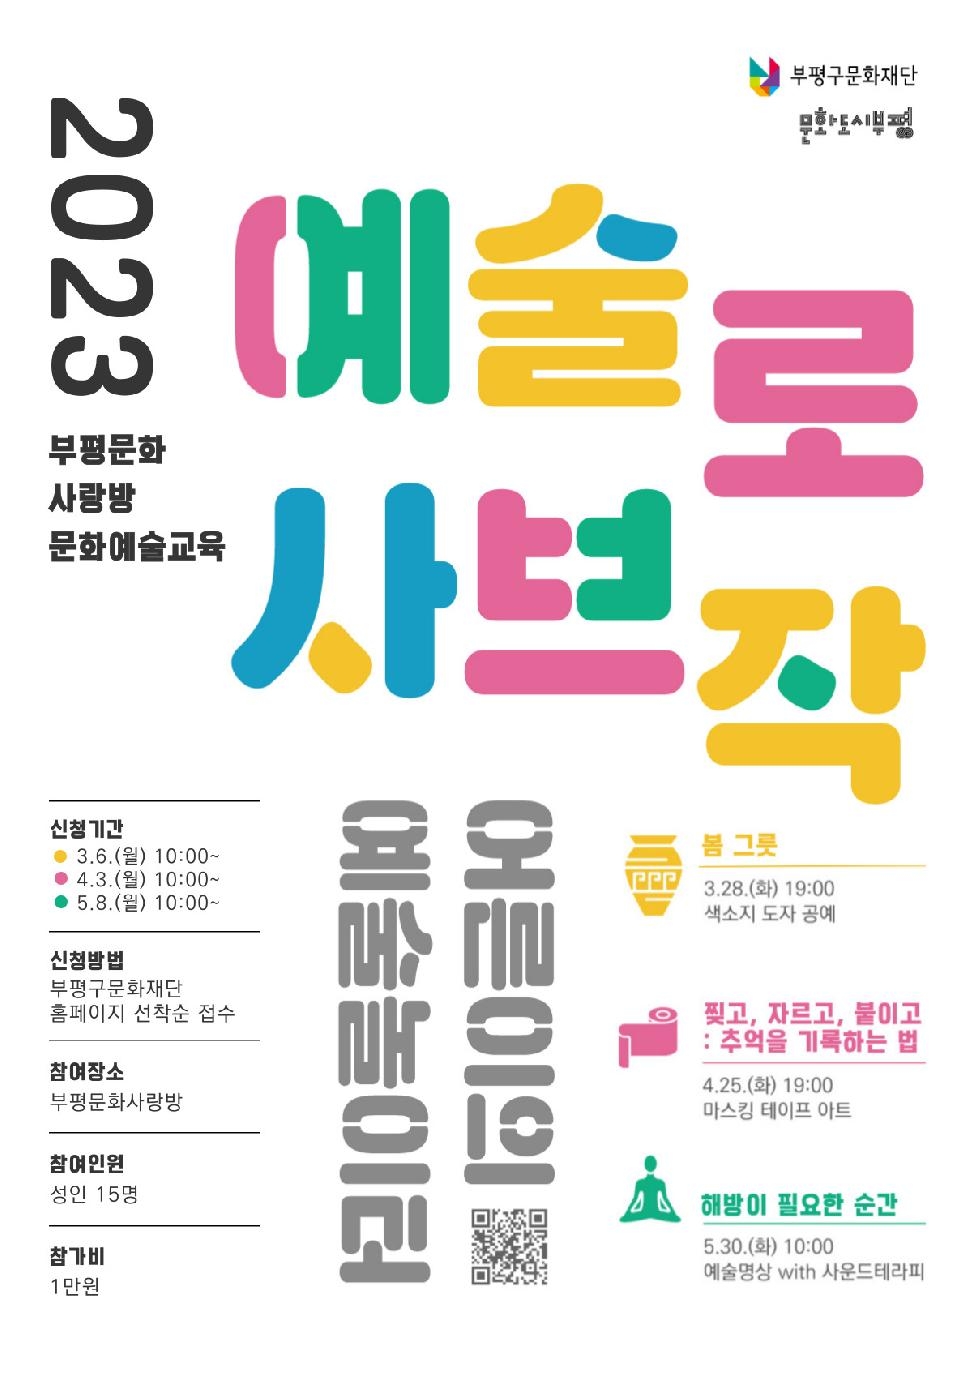 인천 부평구문화재단, 문화예술교육 프로그램 ‘예술로 사브작’참여자 모집